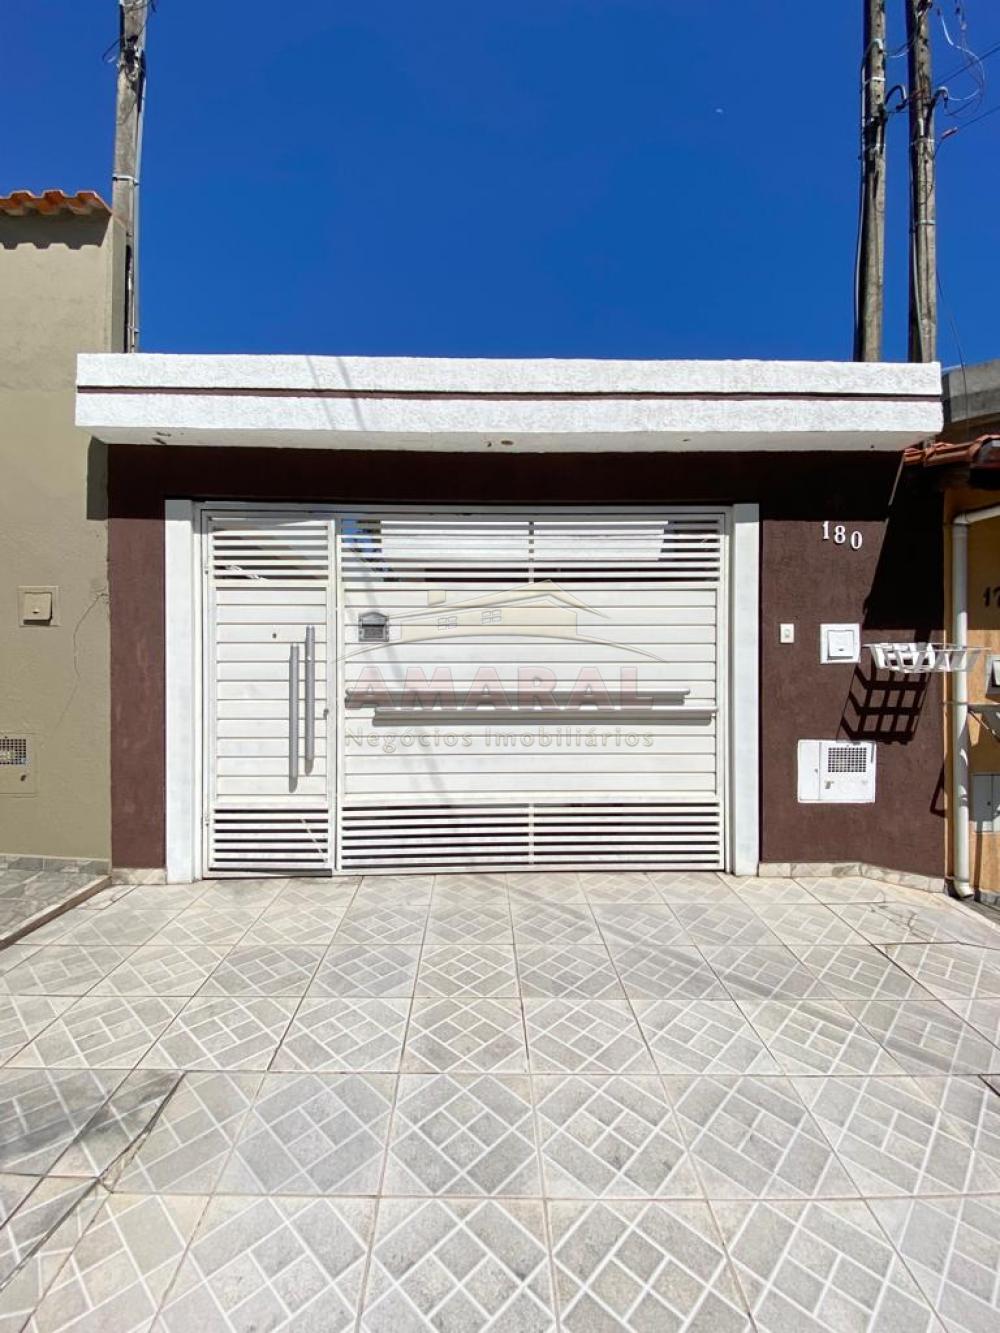 Comprar Casas / Térrea em Suzano R$ 340.000,00 - Foto 1